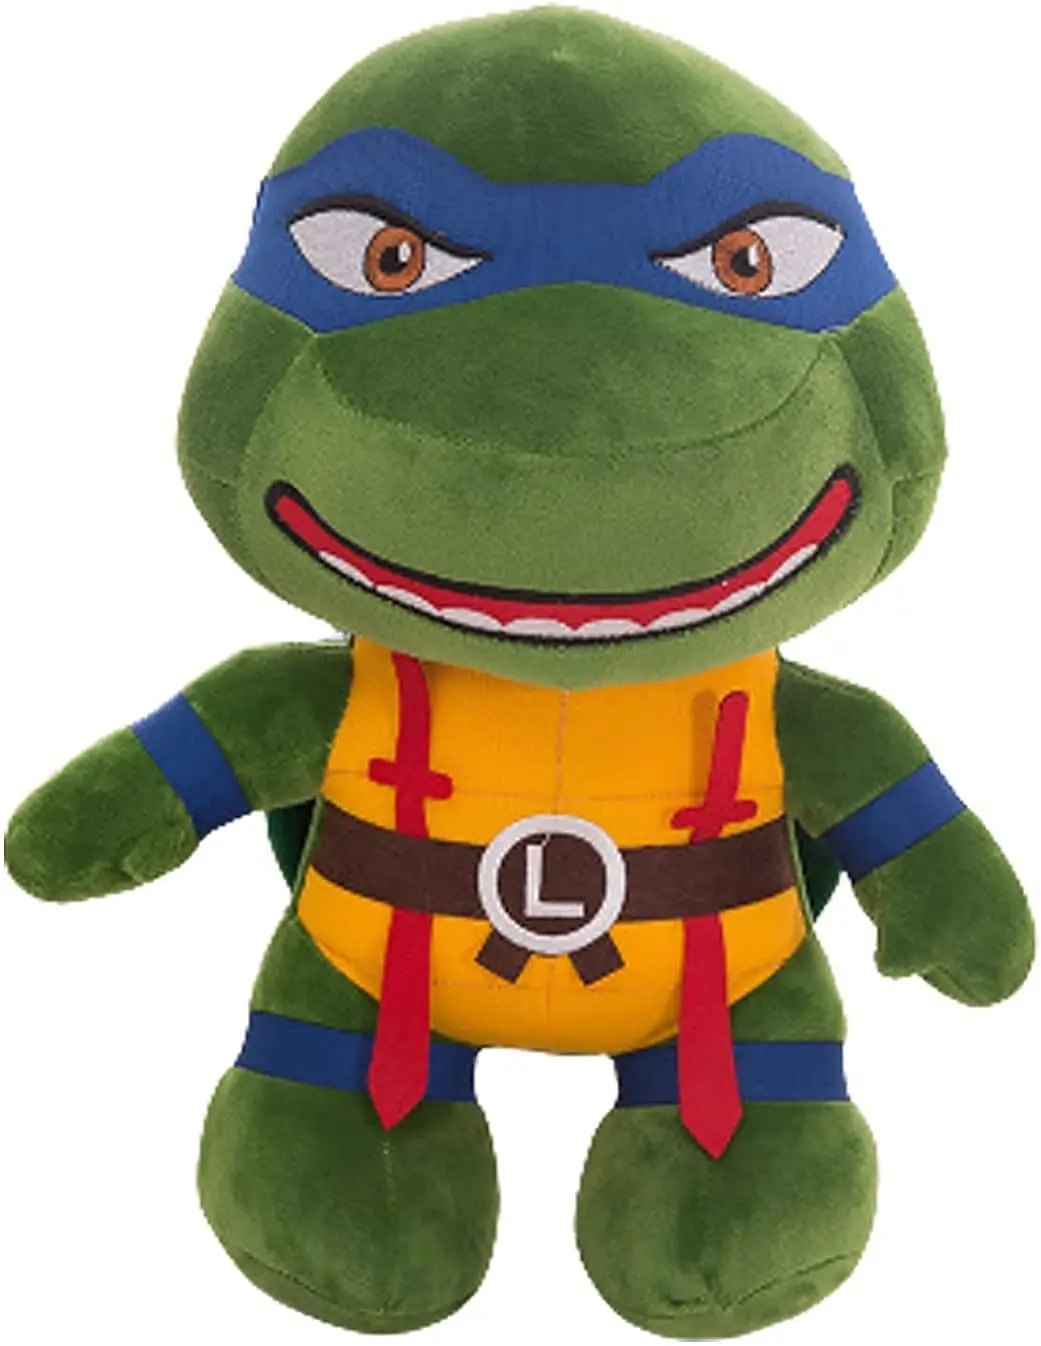 Teenage Mutant Ninja Turtle Plush Toy -4